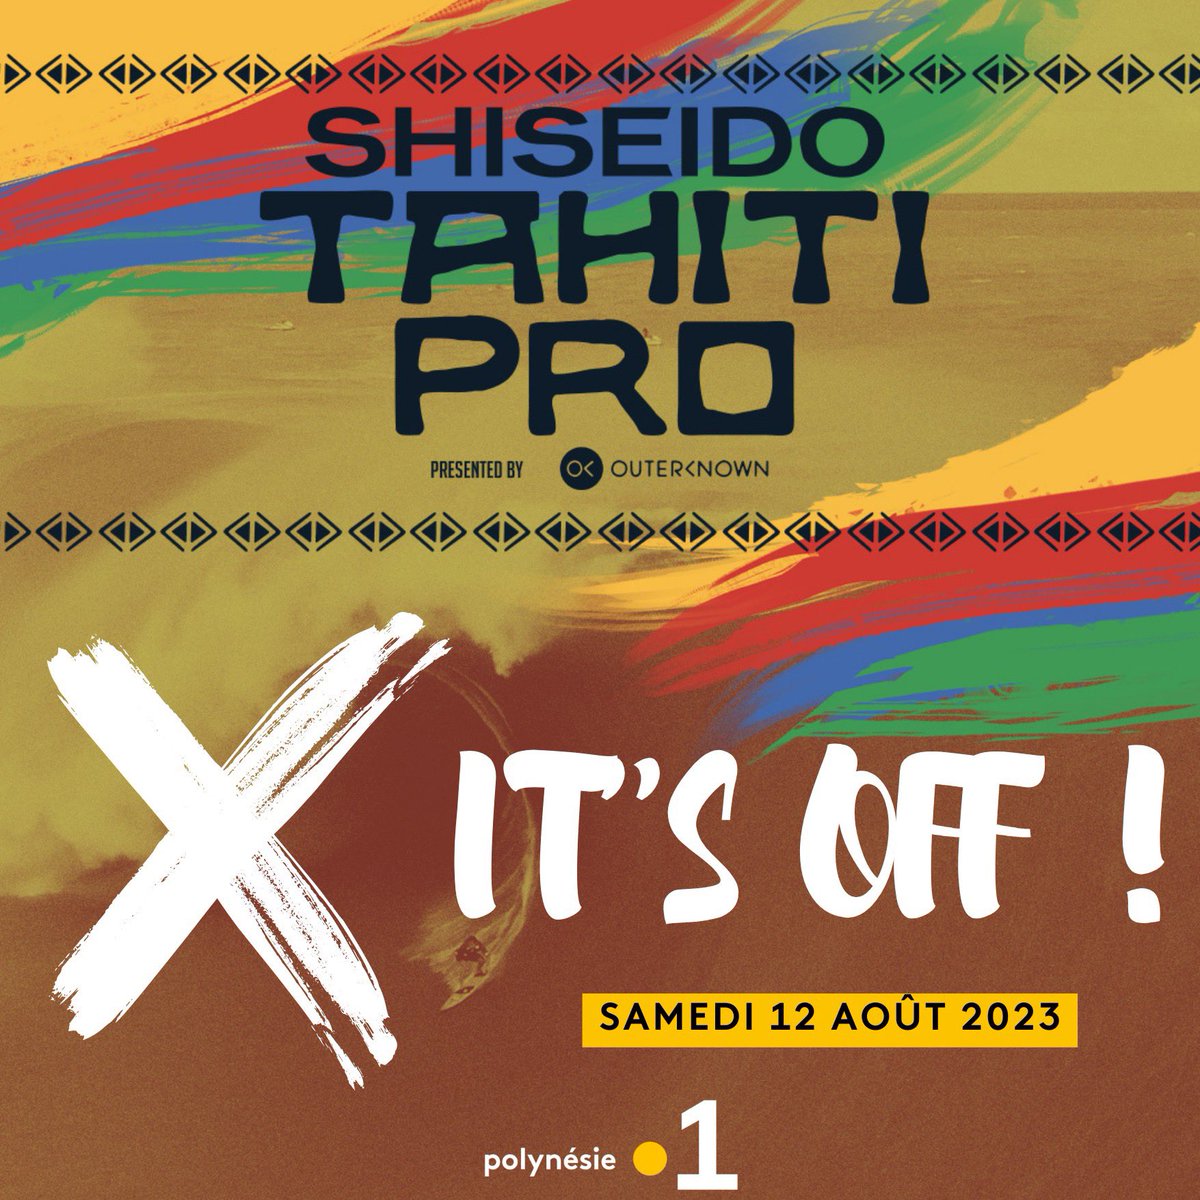 ❌🌊IT'S OFF - 𝗦𝗵𝗶𝘀𝗲𝗶𝗱𝗼 𝗧𝗮𝗵𝗶𝘁𝗶 𝗣𝗿𝗼 𝟮𝟬𝟮𝟯 - 𝗗𝗔𝗬 2⃣ The #ShiseidoTahitiPro is OFF . En raison de l'absence de houle, la compétition est suspendue pour aujourd'hui.

#tahitipro2023 #TahitiPro #teahupoo